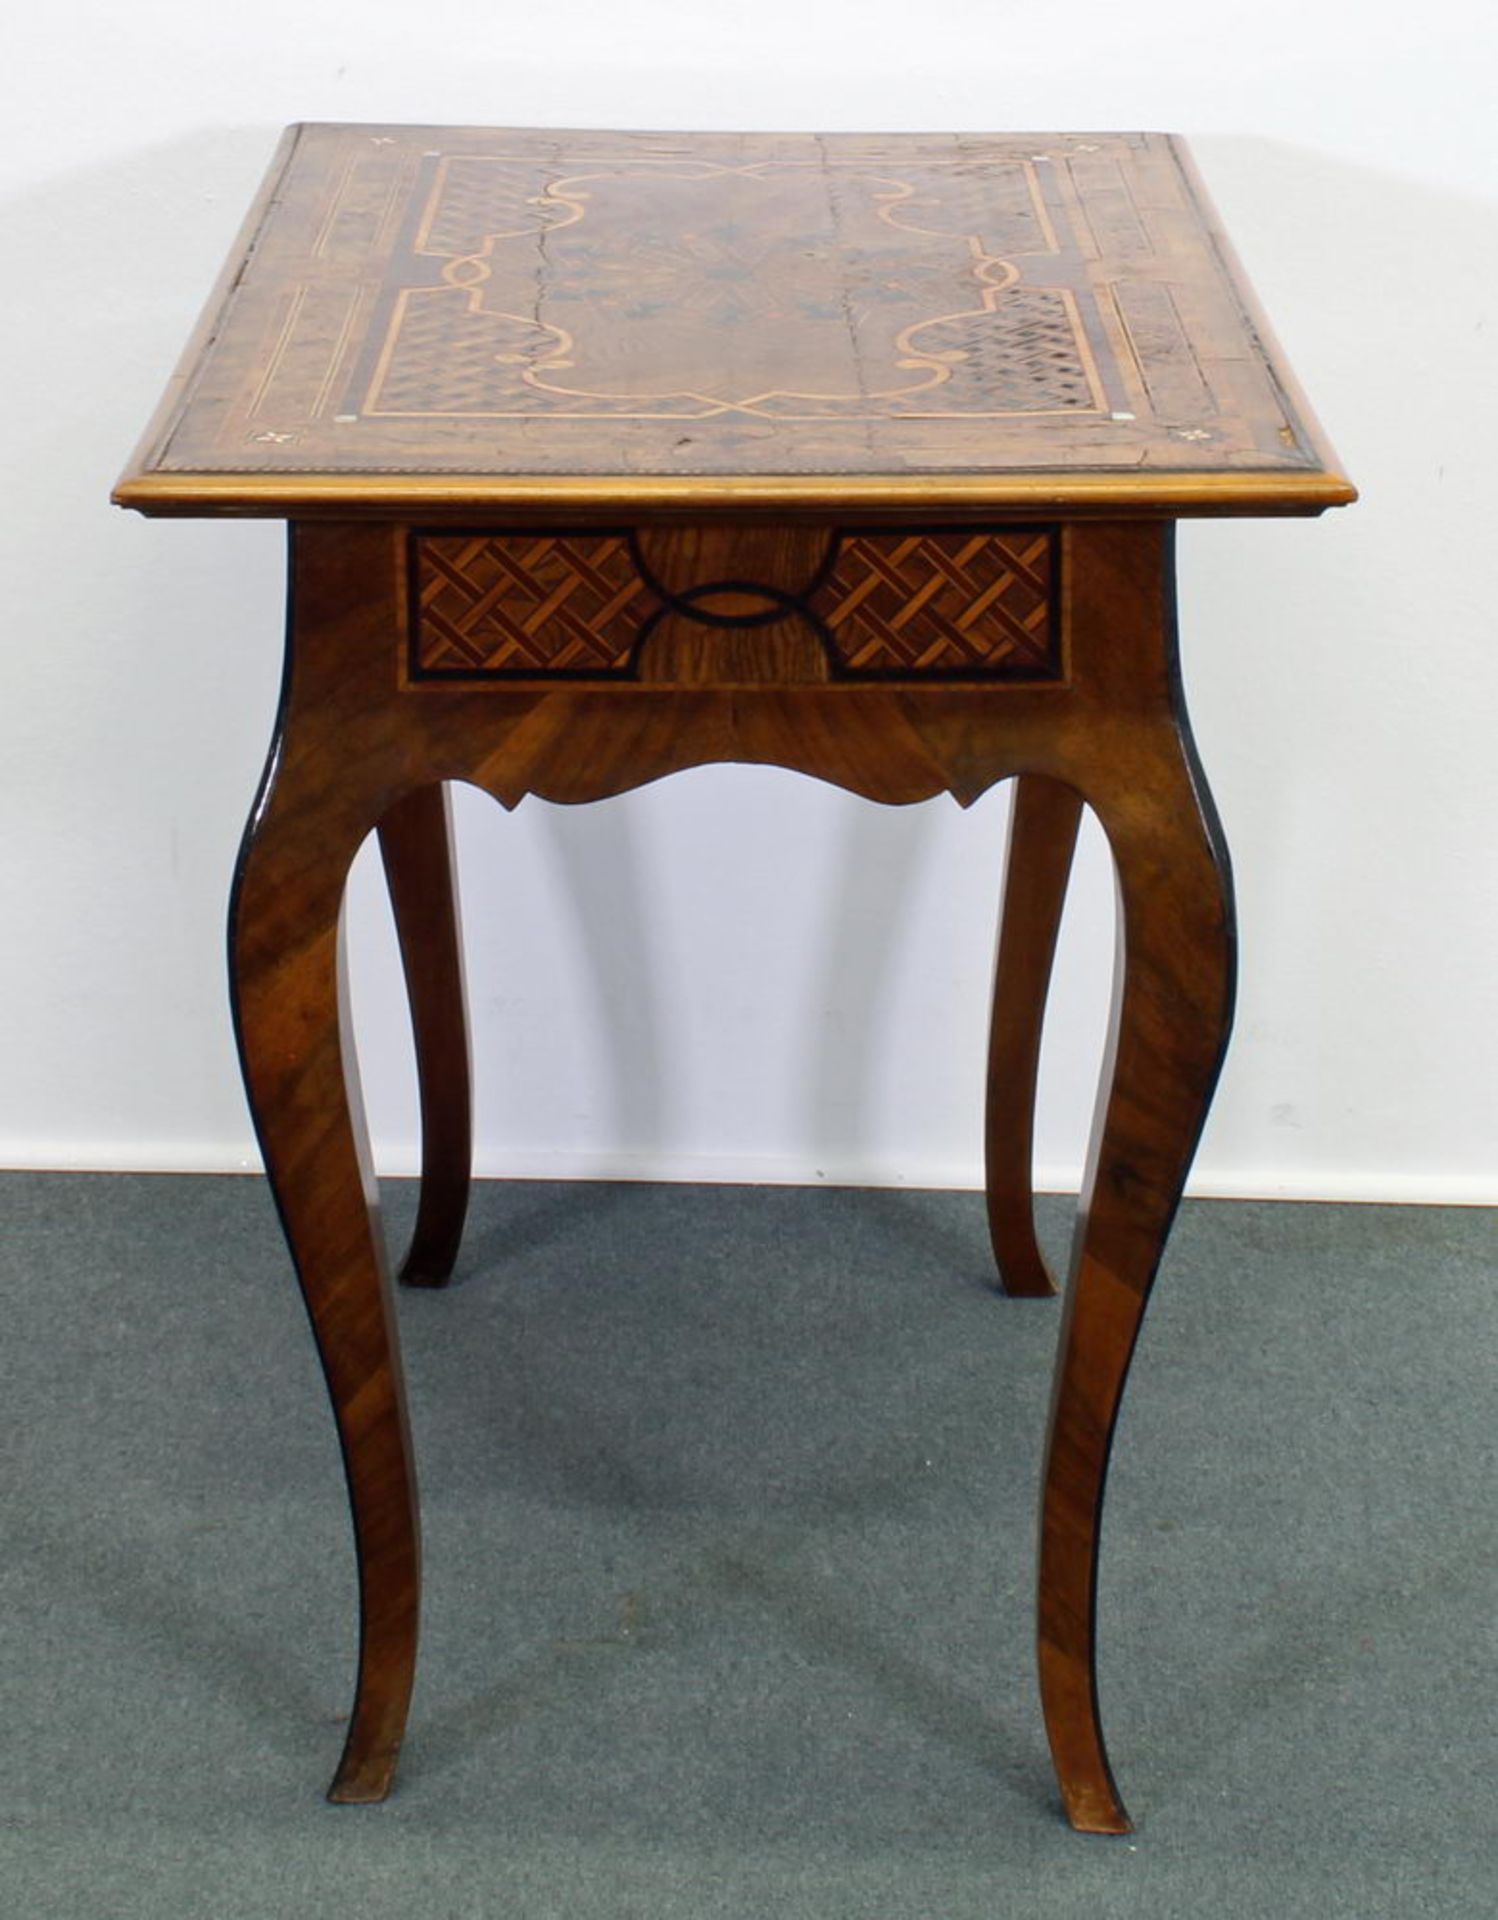 Tisch, 18./19. Jh., Nussholz u.a., reiche geometrische Intarsien, 71 x 72 x 53 cm, kleine Beschädi - Image 3 of 3